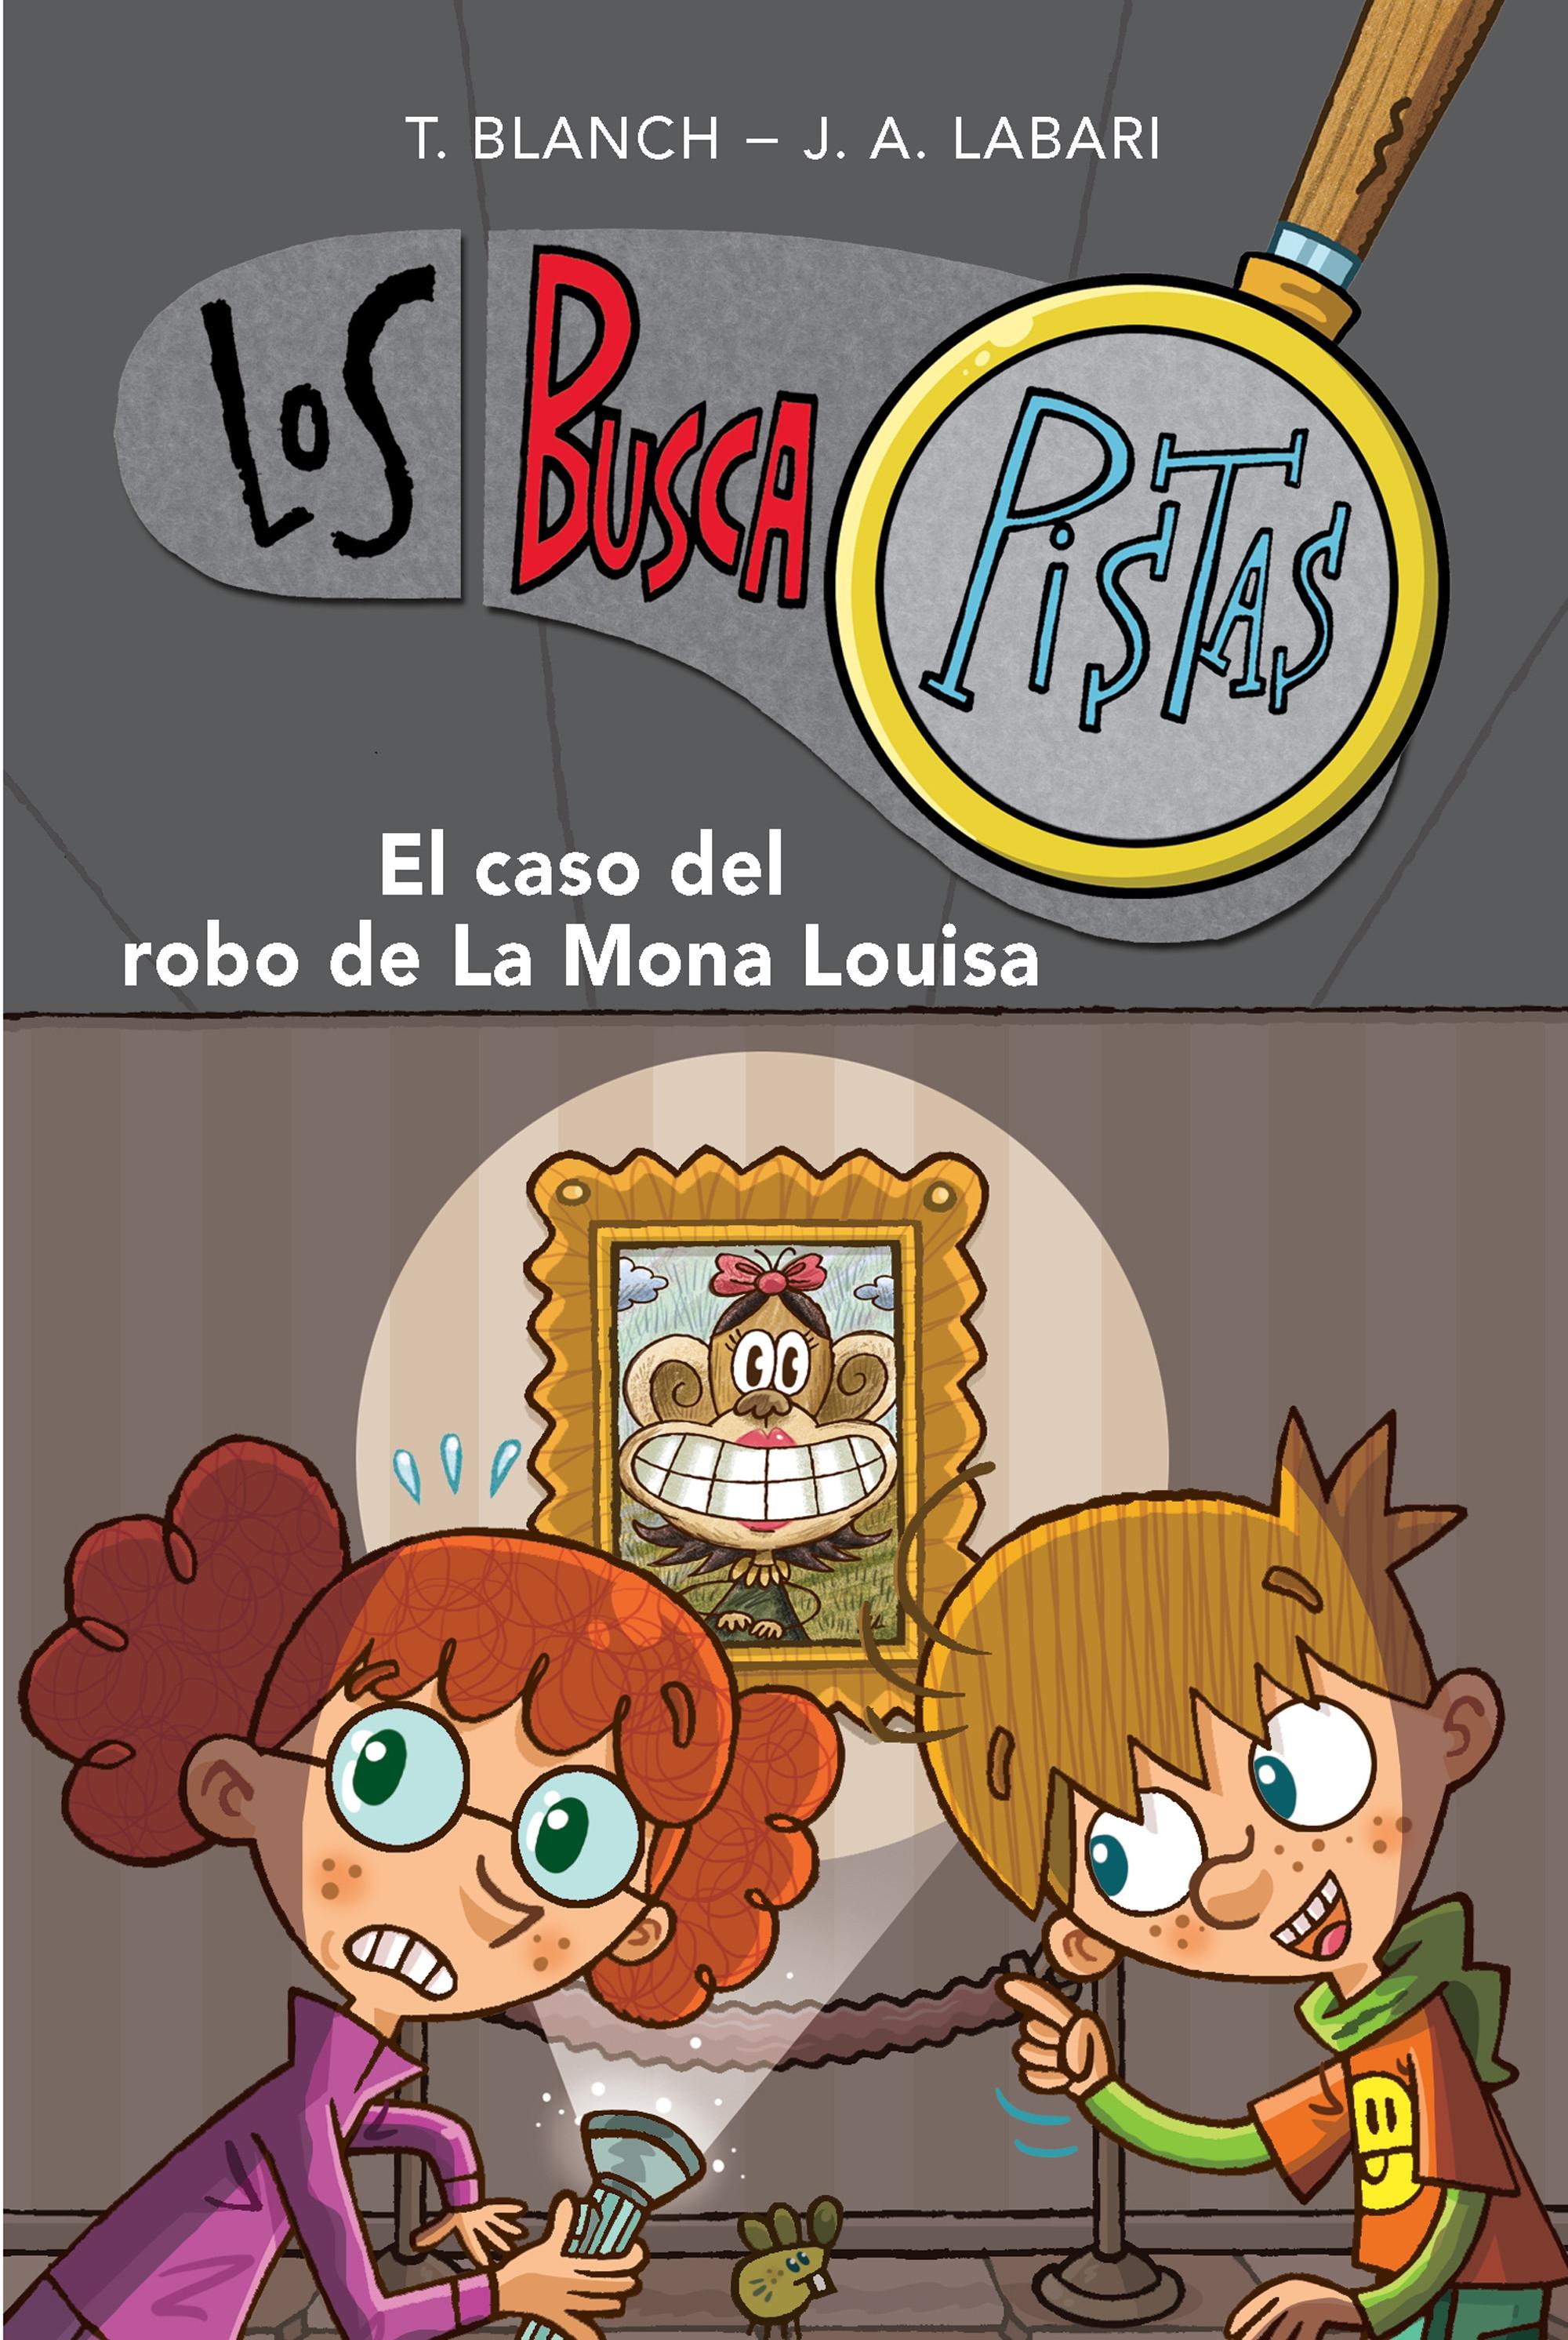 El caso del robo de la Mona Louisa "(Los BuscaPistas - 3)". 